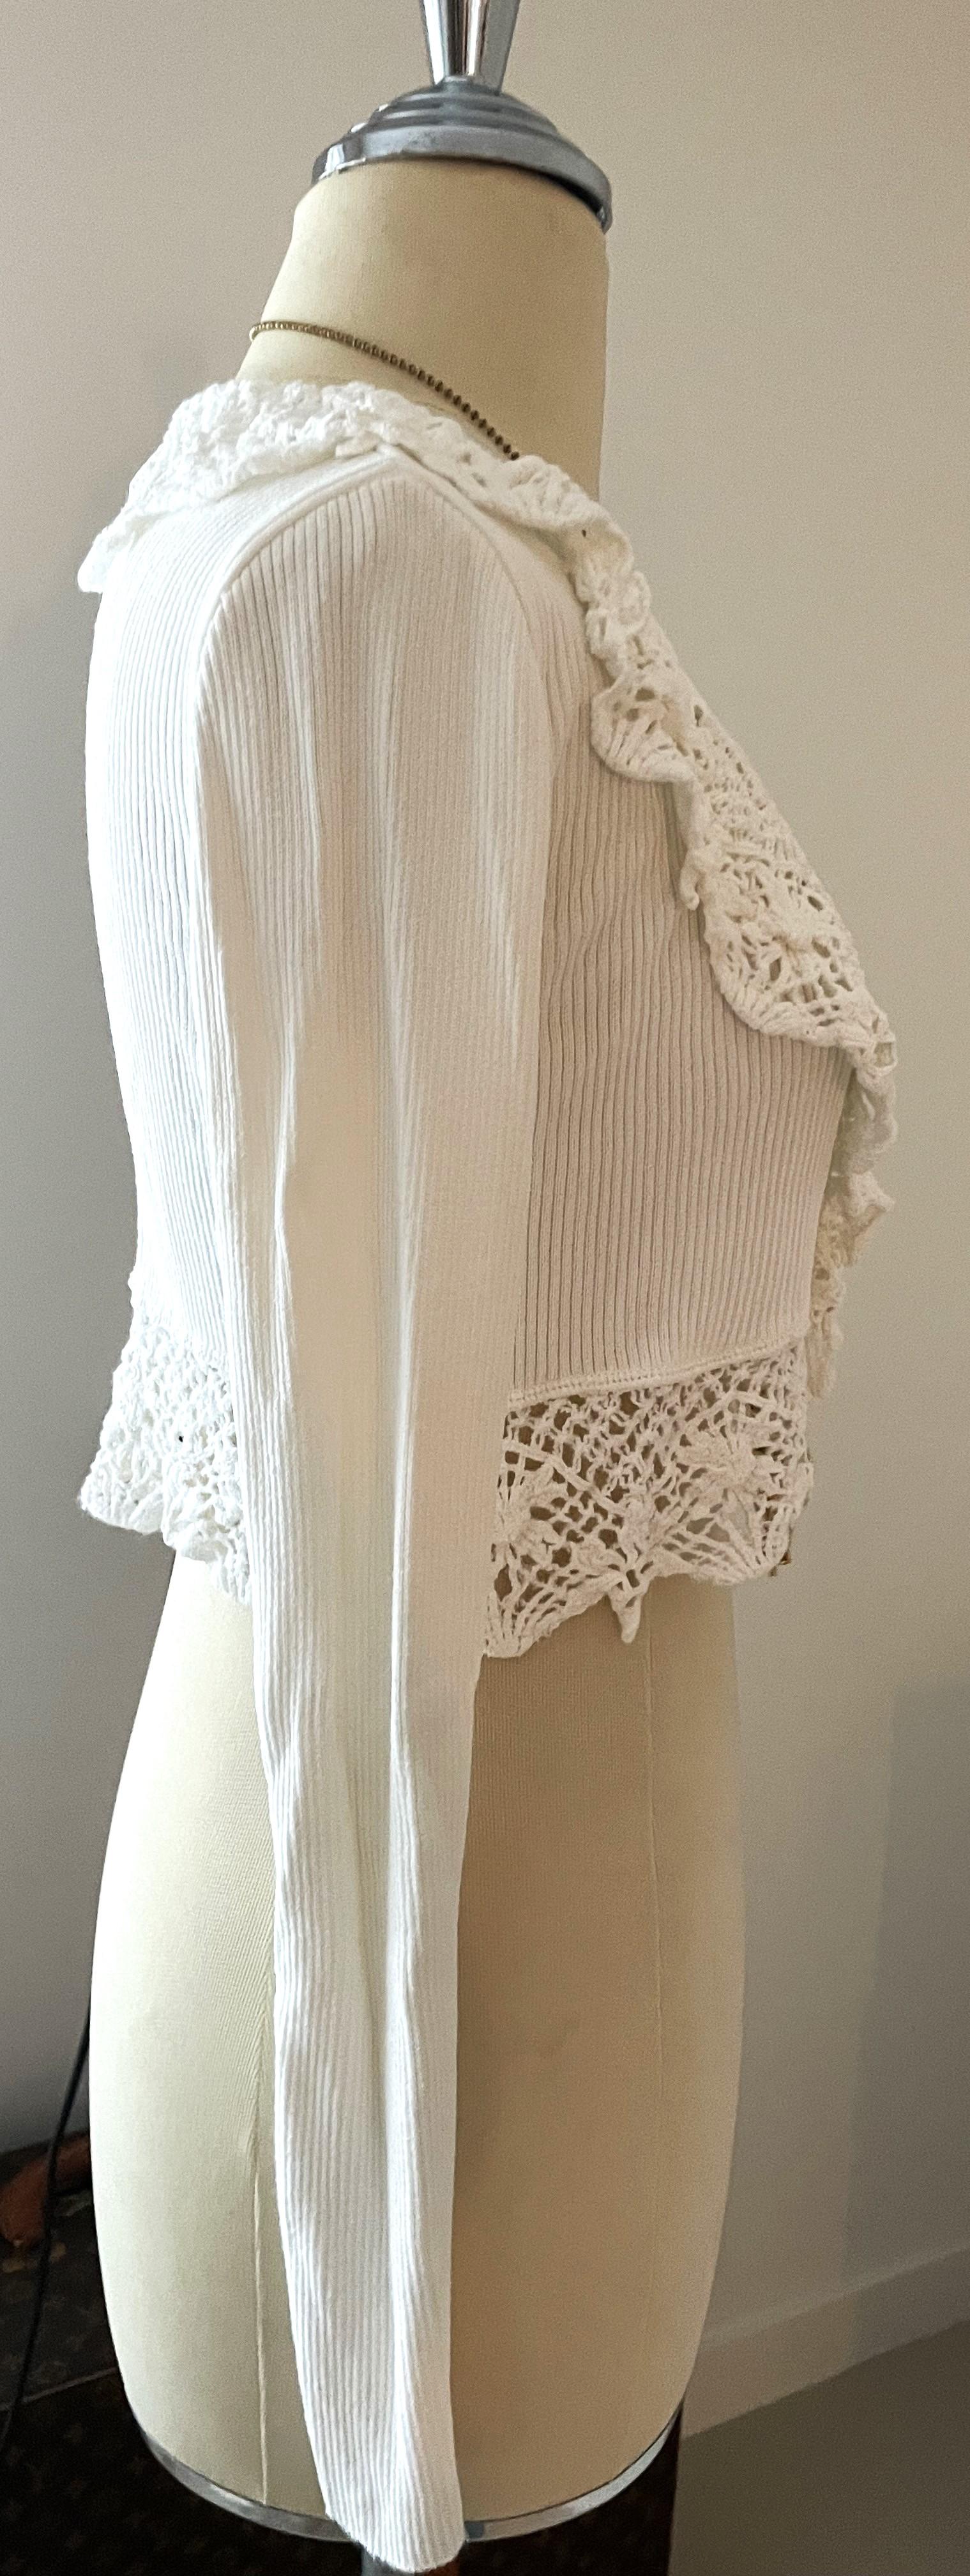 Moschino Couture Cardigan White Crocheted est une belle pièce des années 90 et très bien conservée. Elegant, frais et prêt à porter !


Moschino est une marque italienne de mode de luxe connue pour ses designs ludiques et non conventionnels. Le